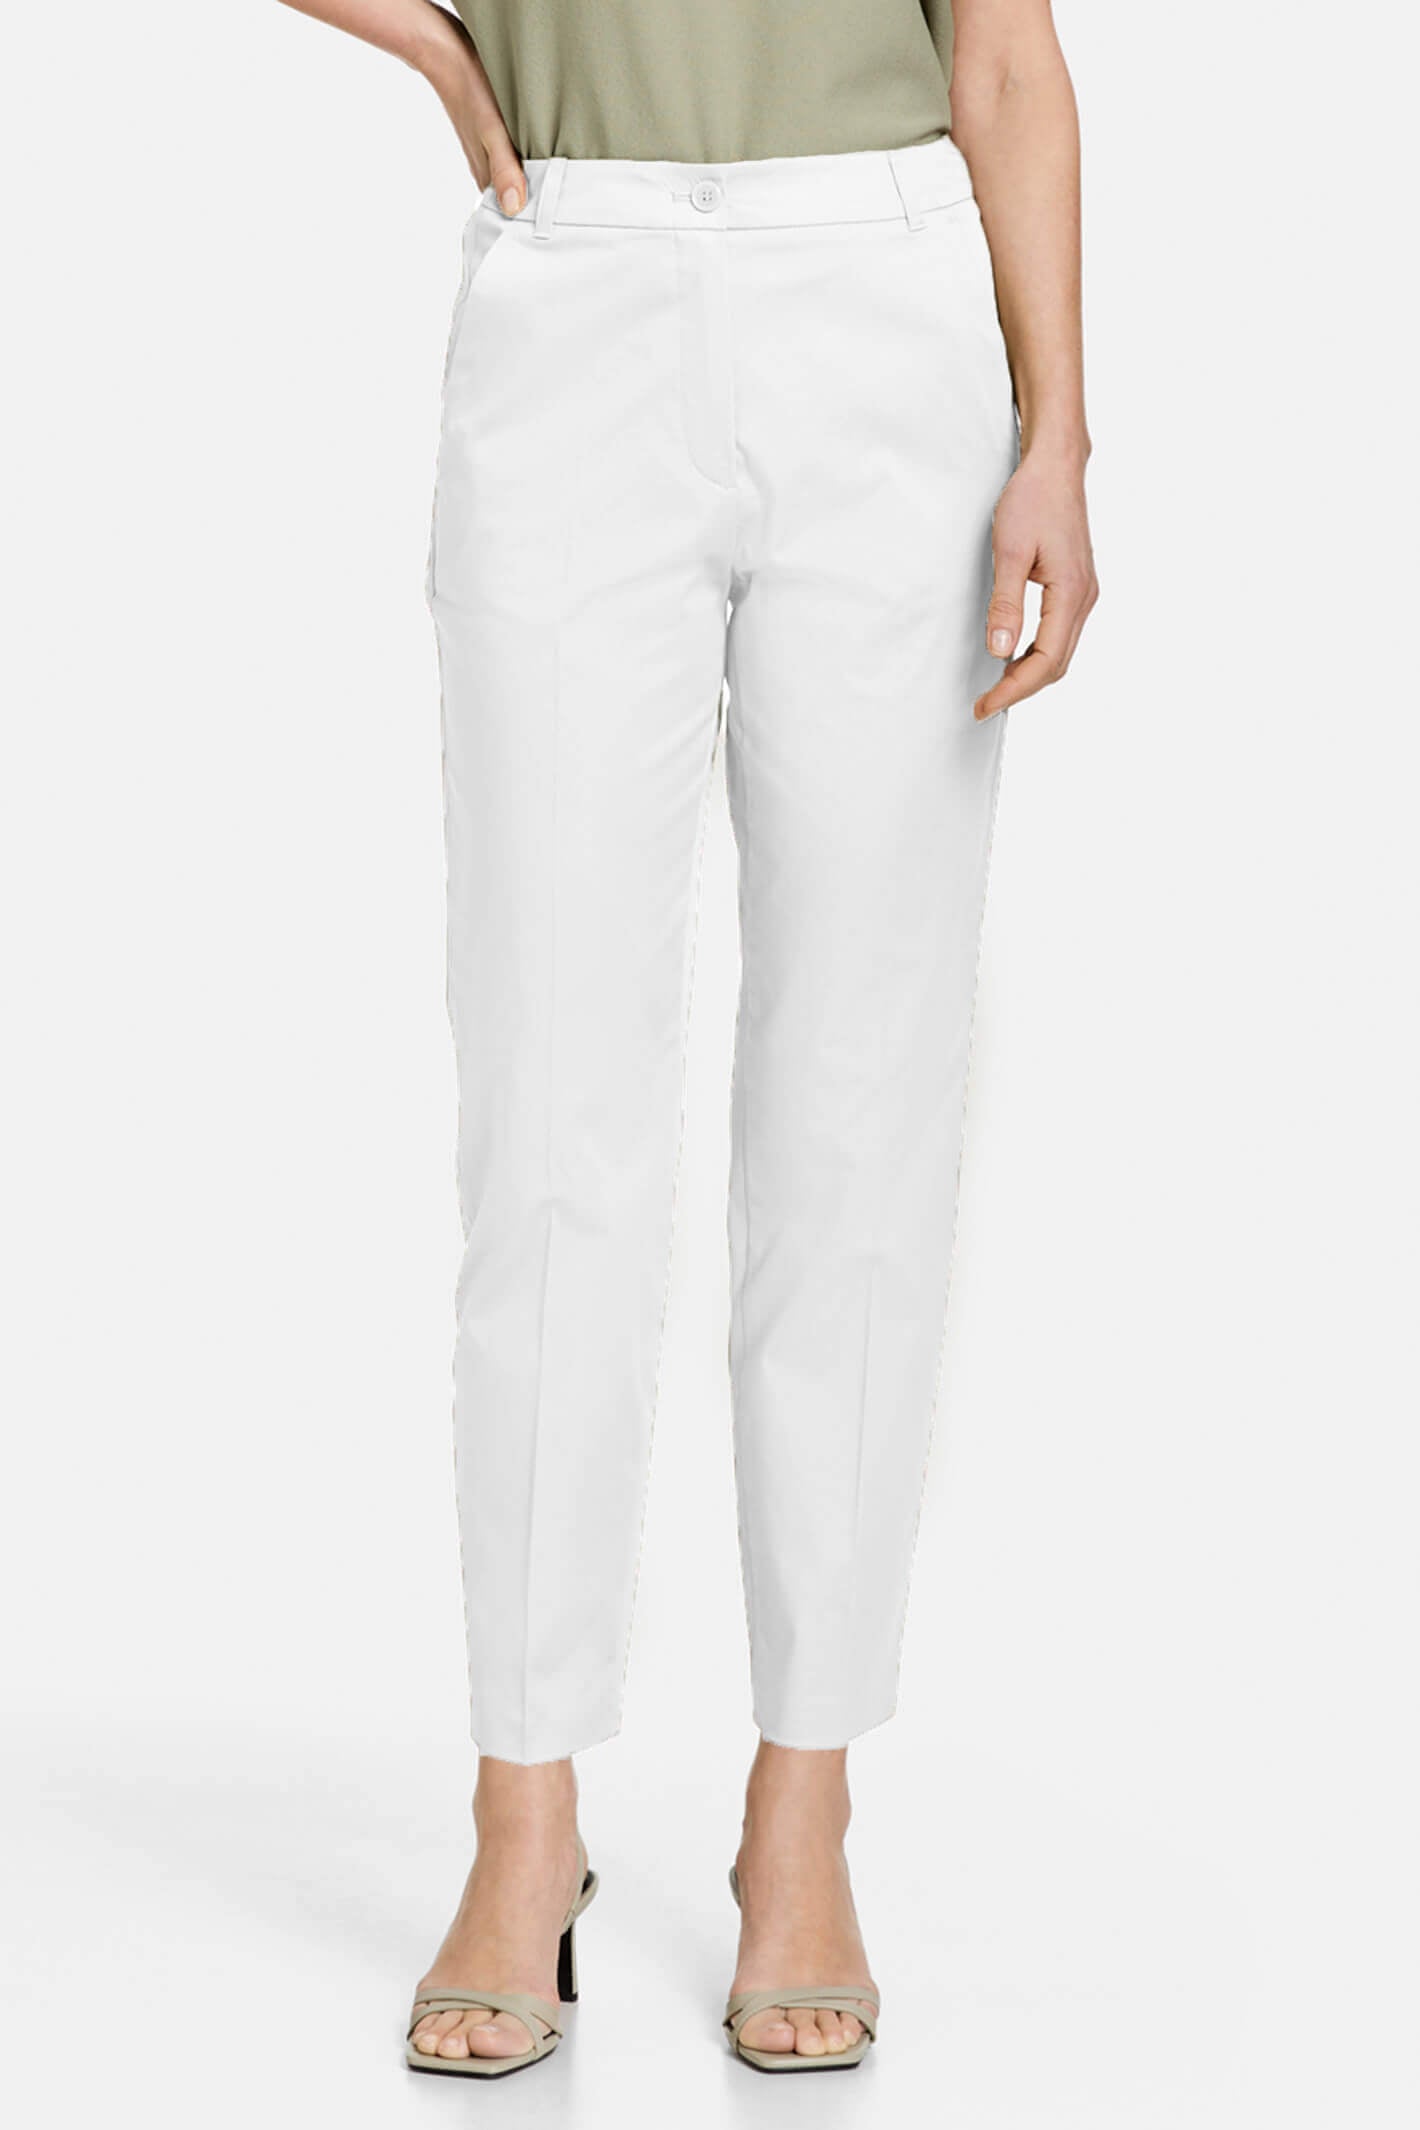 Cato Fashions | Cato Plus Petite White Linen Trousers